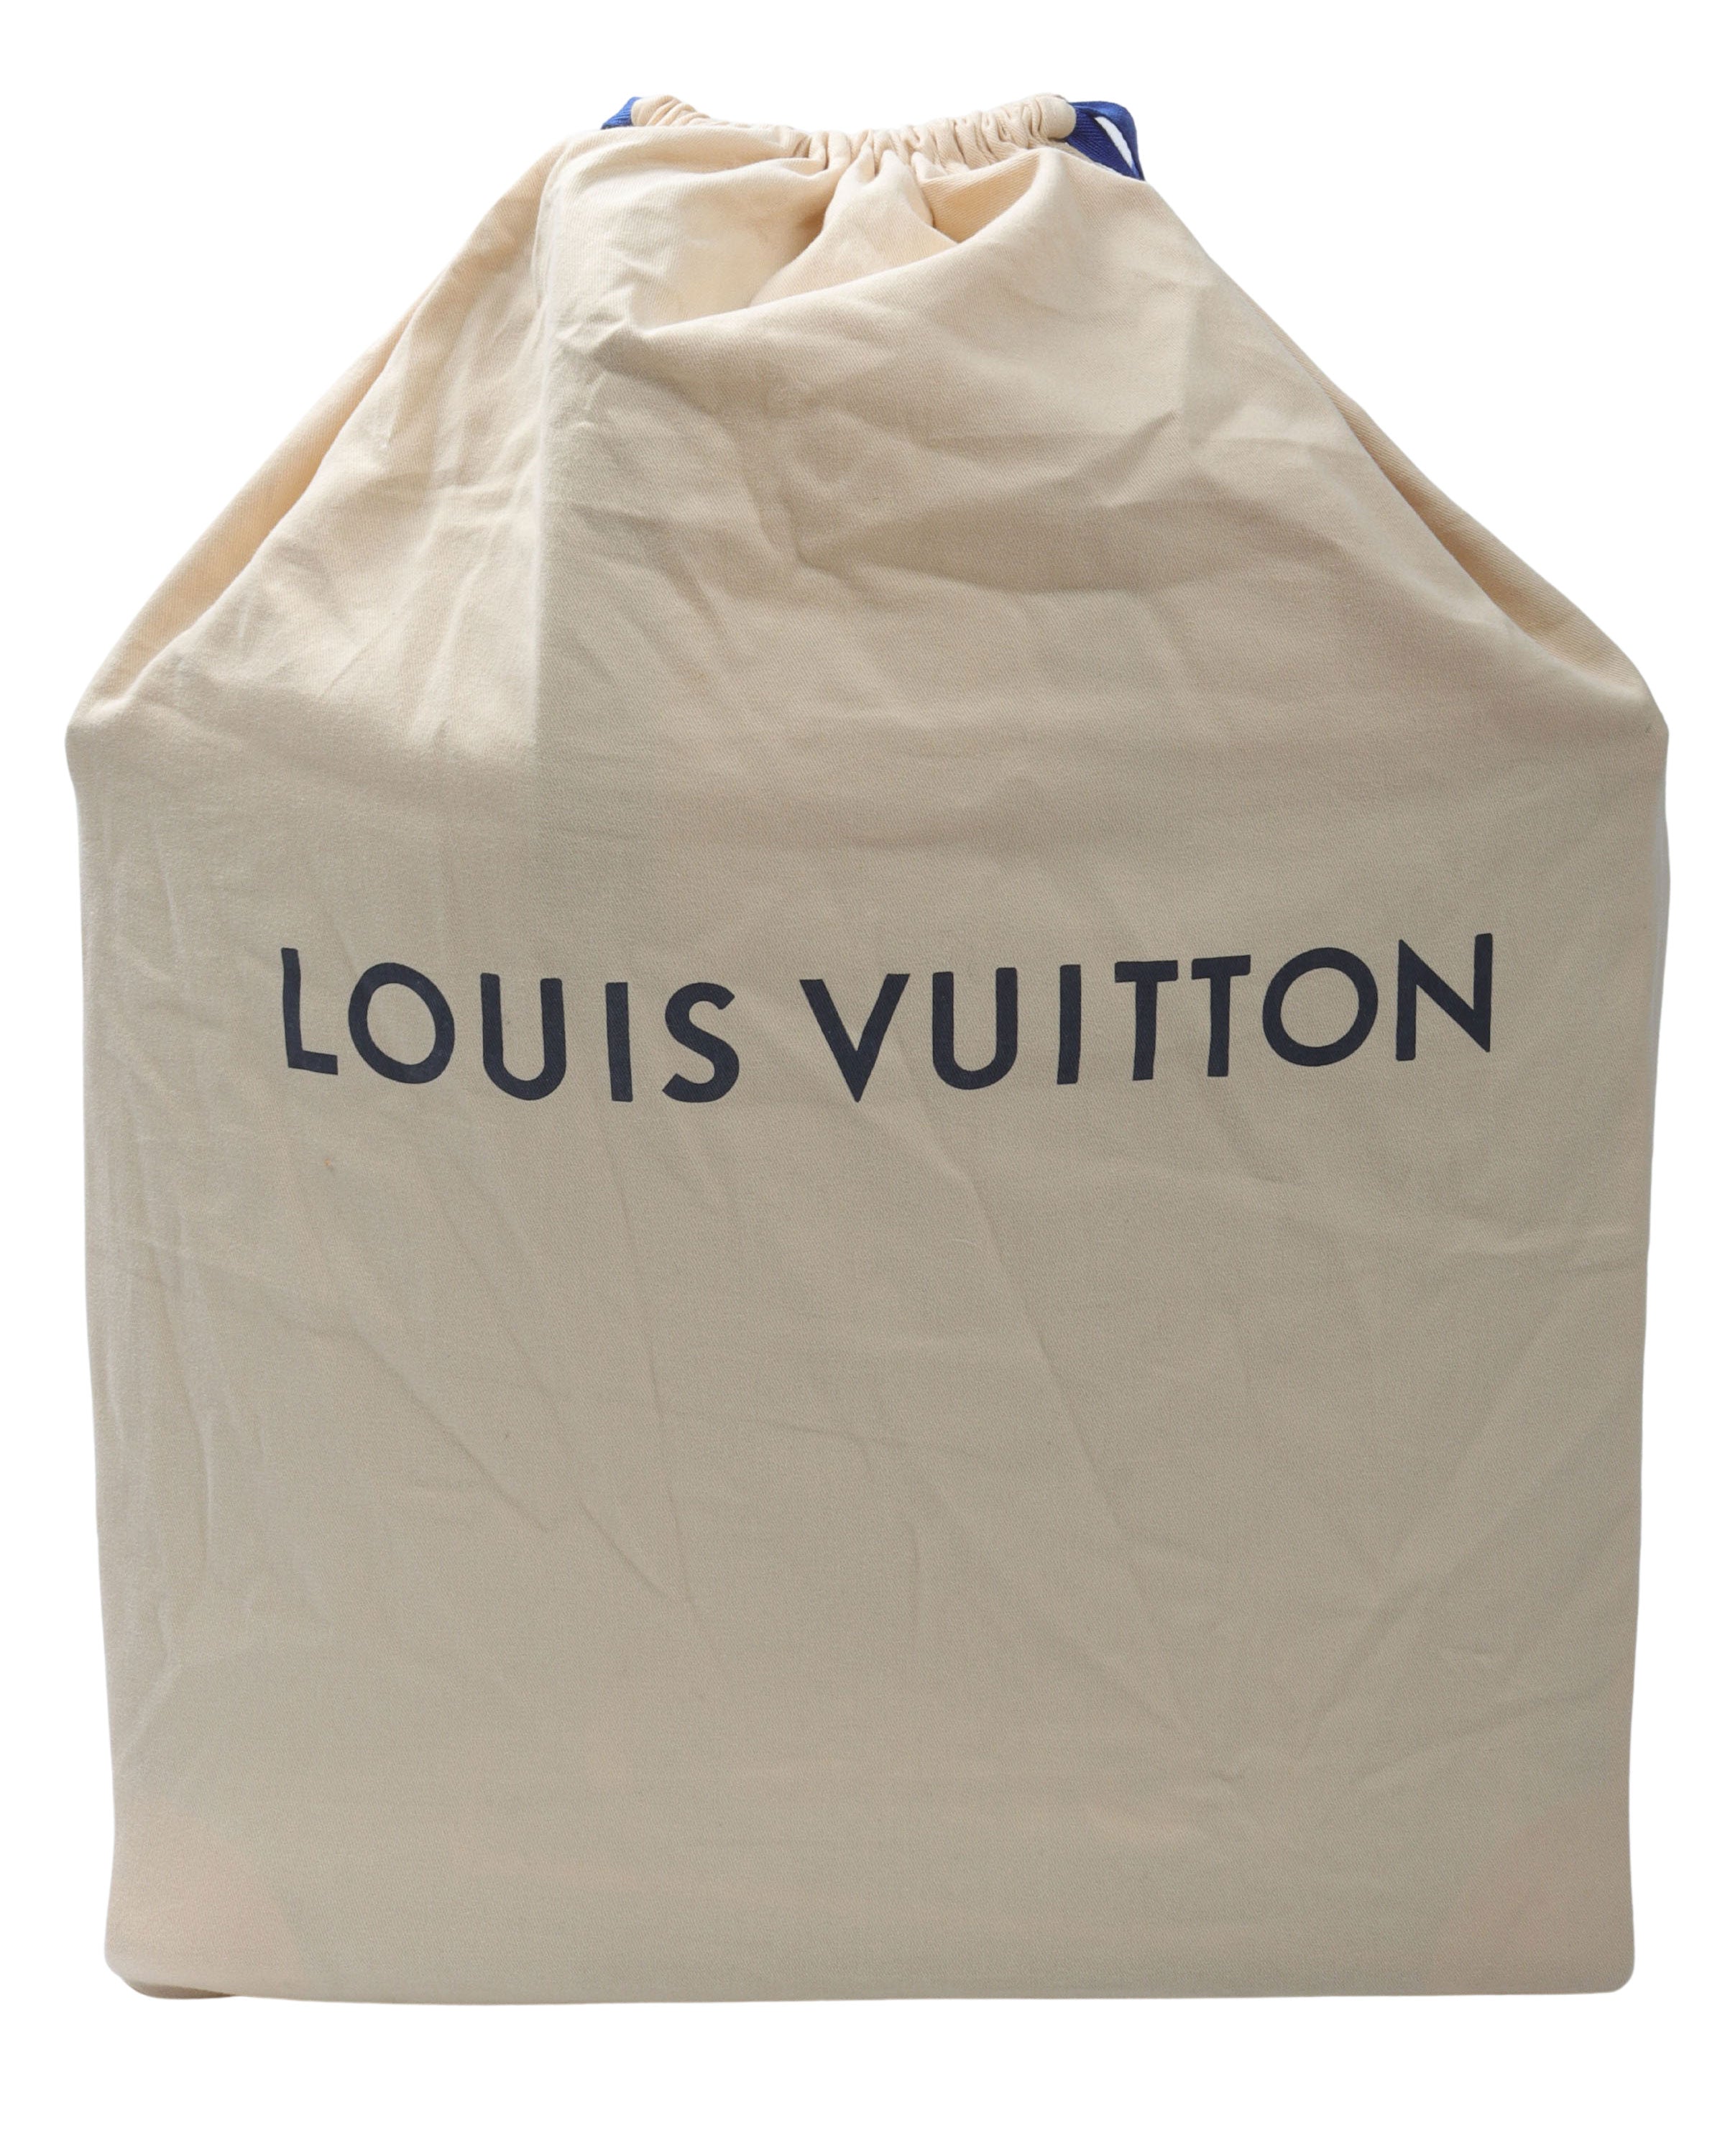 Louis Vuitton Louis Vuitton Louis Vuitton FW21 Tourist vs Purist